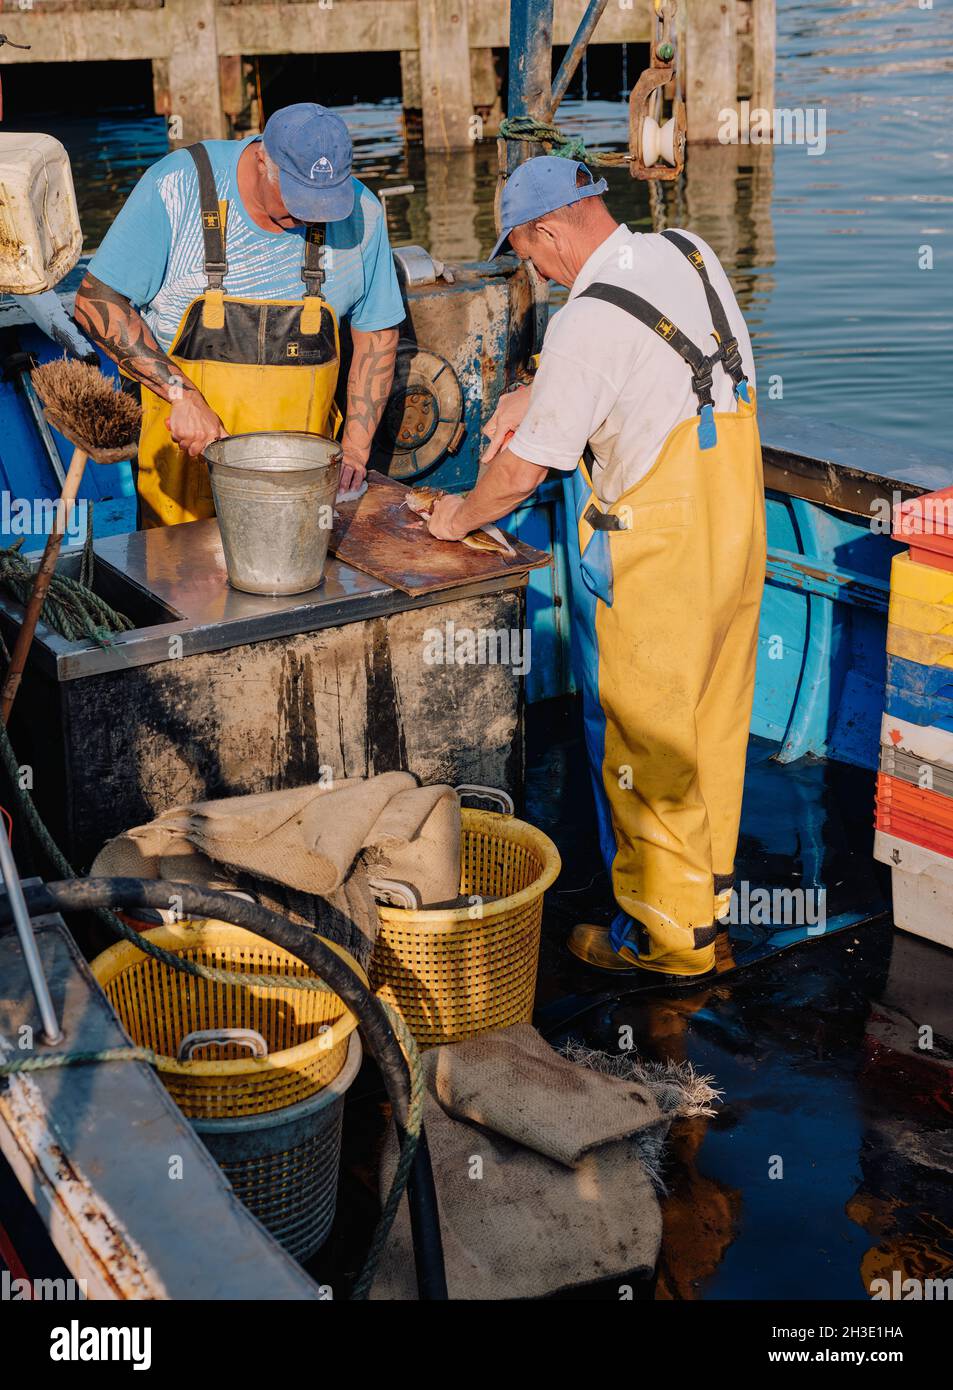 In Whitby North Yorkshire England, Großbritannien, arbeiten gewerbliche Fischer, die ihren Fang von weißem Fisch an Bord ihres Fischerbootes ausschaufeln Stockfoto